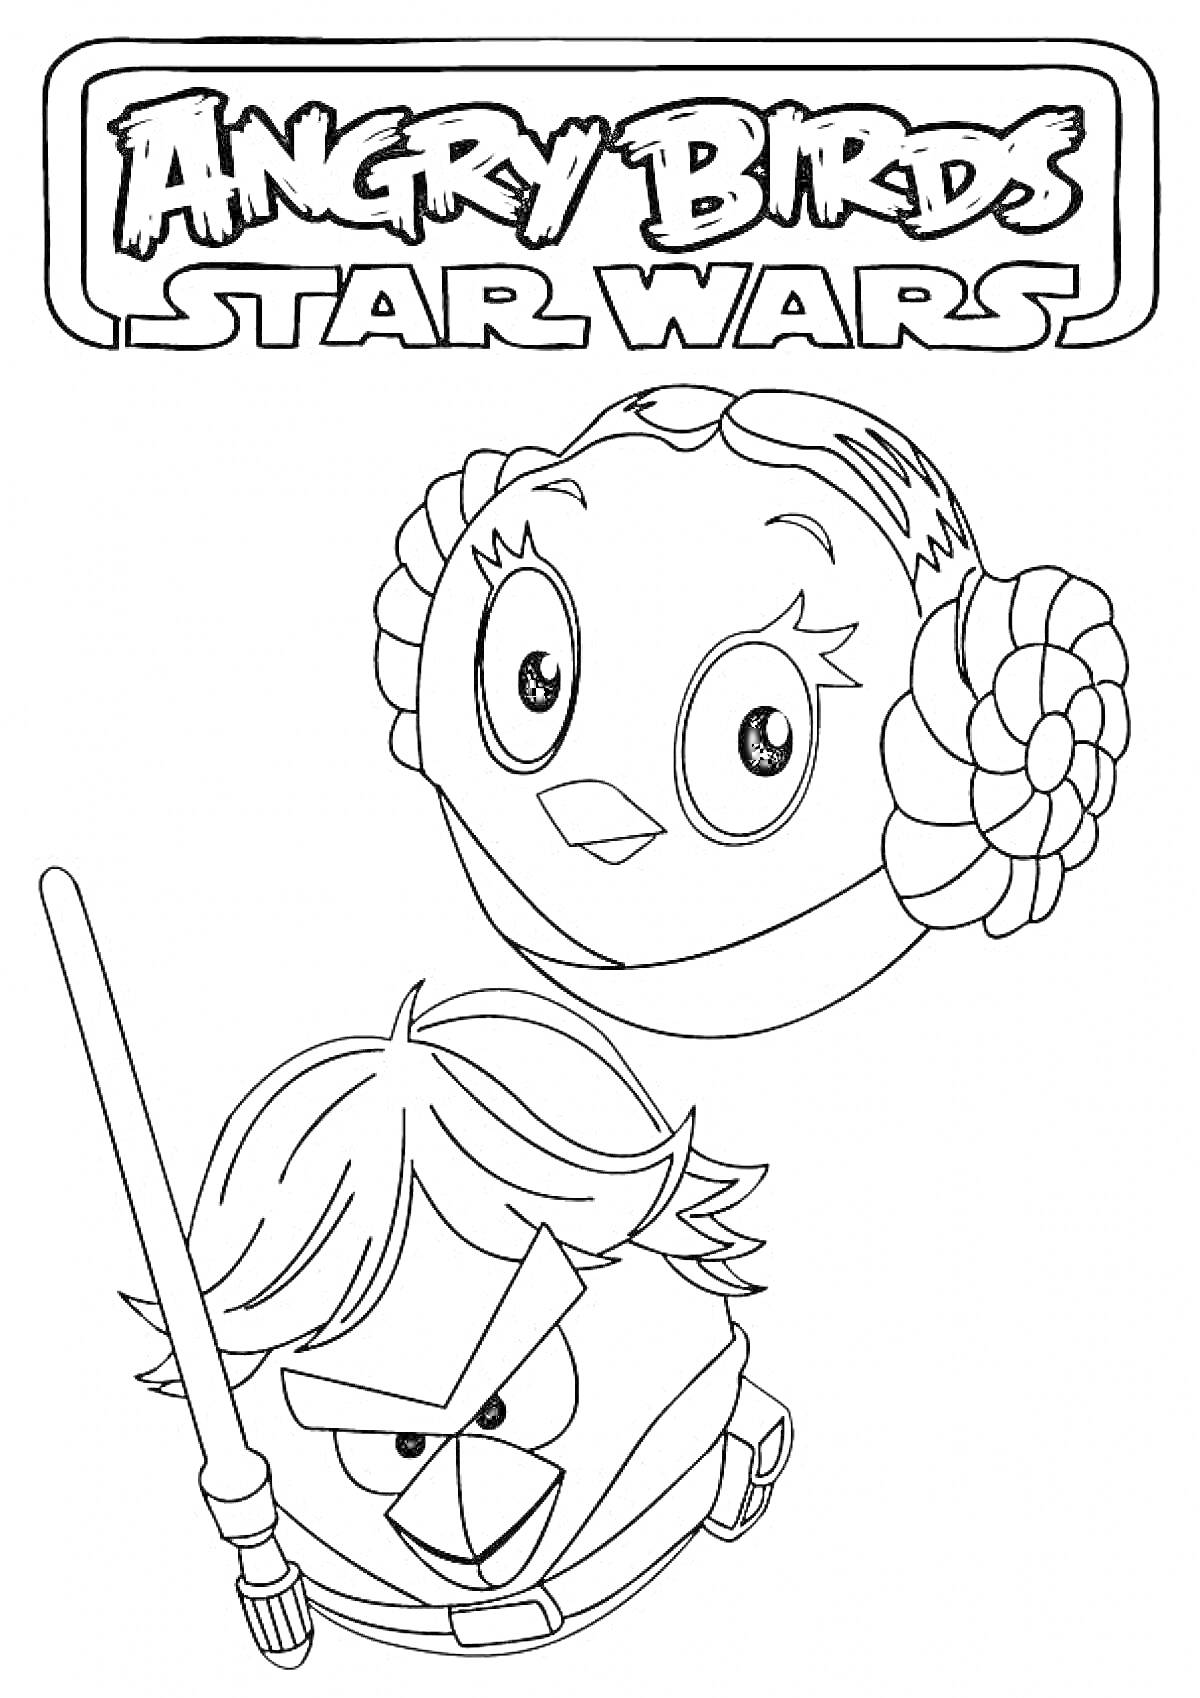 Раскраска Энгри Бердс Звездные войны - птичка с прической принцессы Леи, птичка с мечом Люка Скайуокера